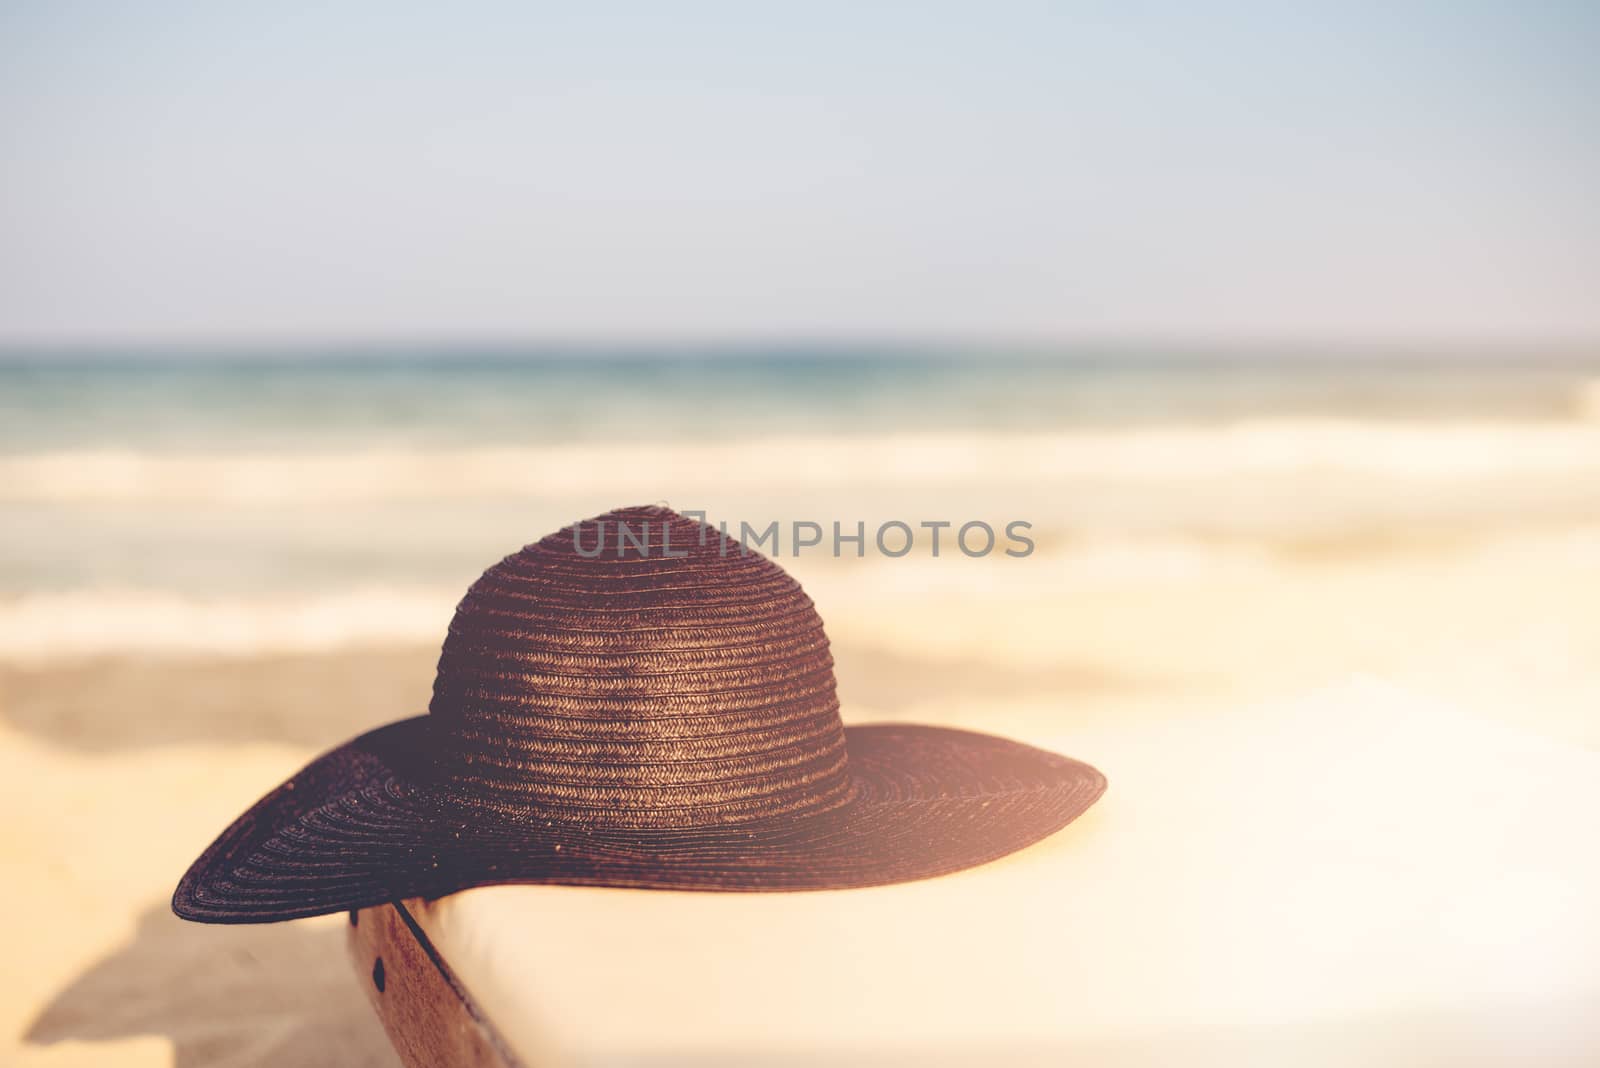 Black Hat on Beach Chair On The Tropical Sand Beach. Sun, sun haze, glare. Copy space